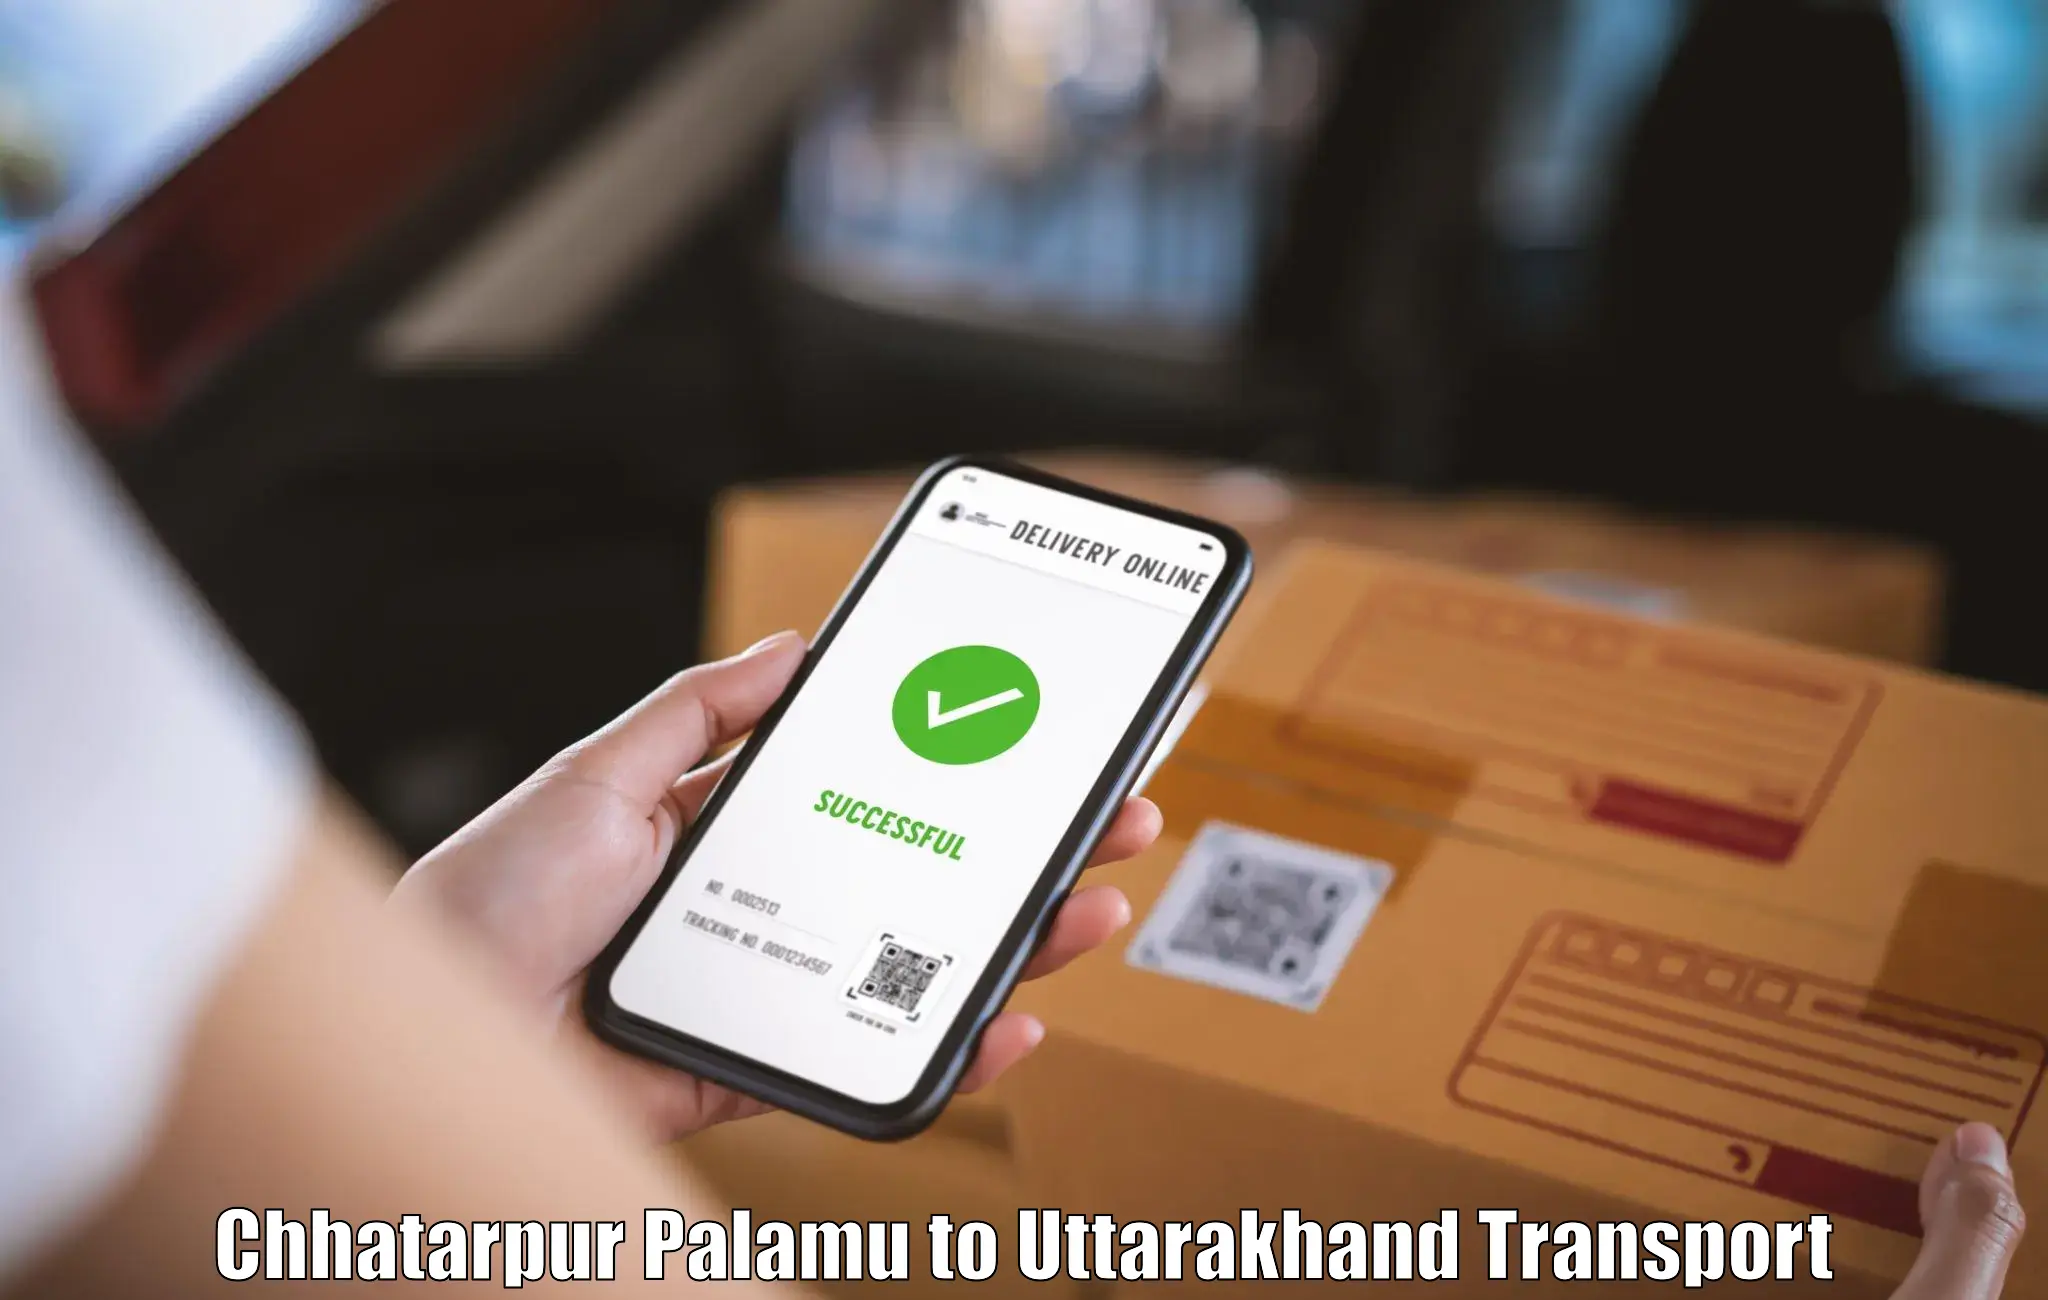 Pick up transport service Chhatarpur Palamu to Paithani